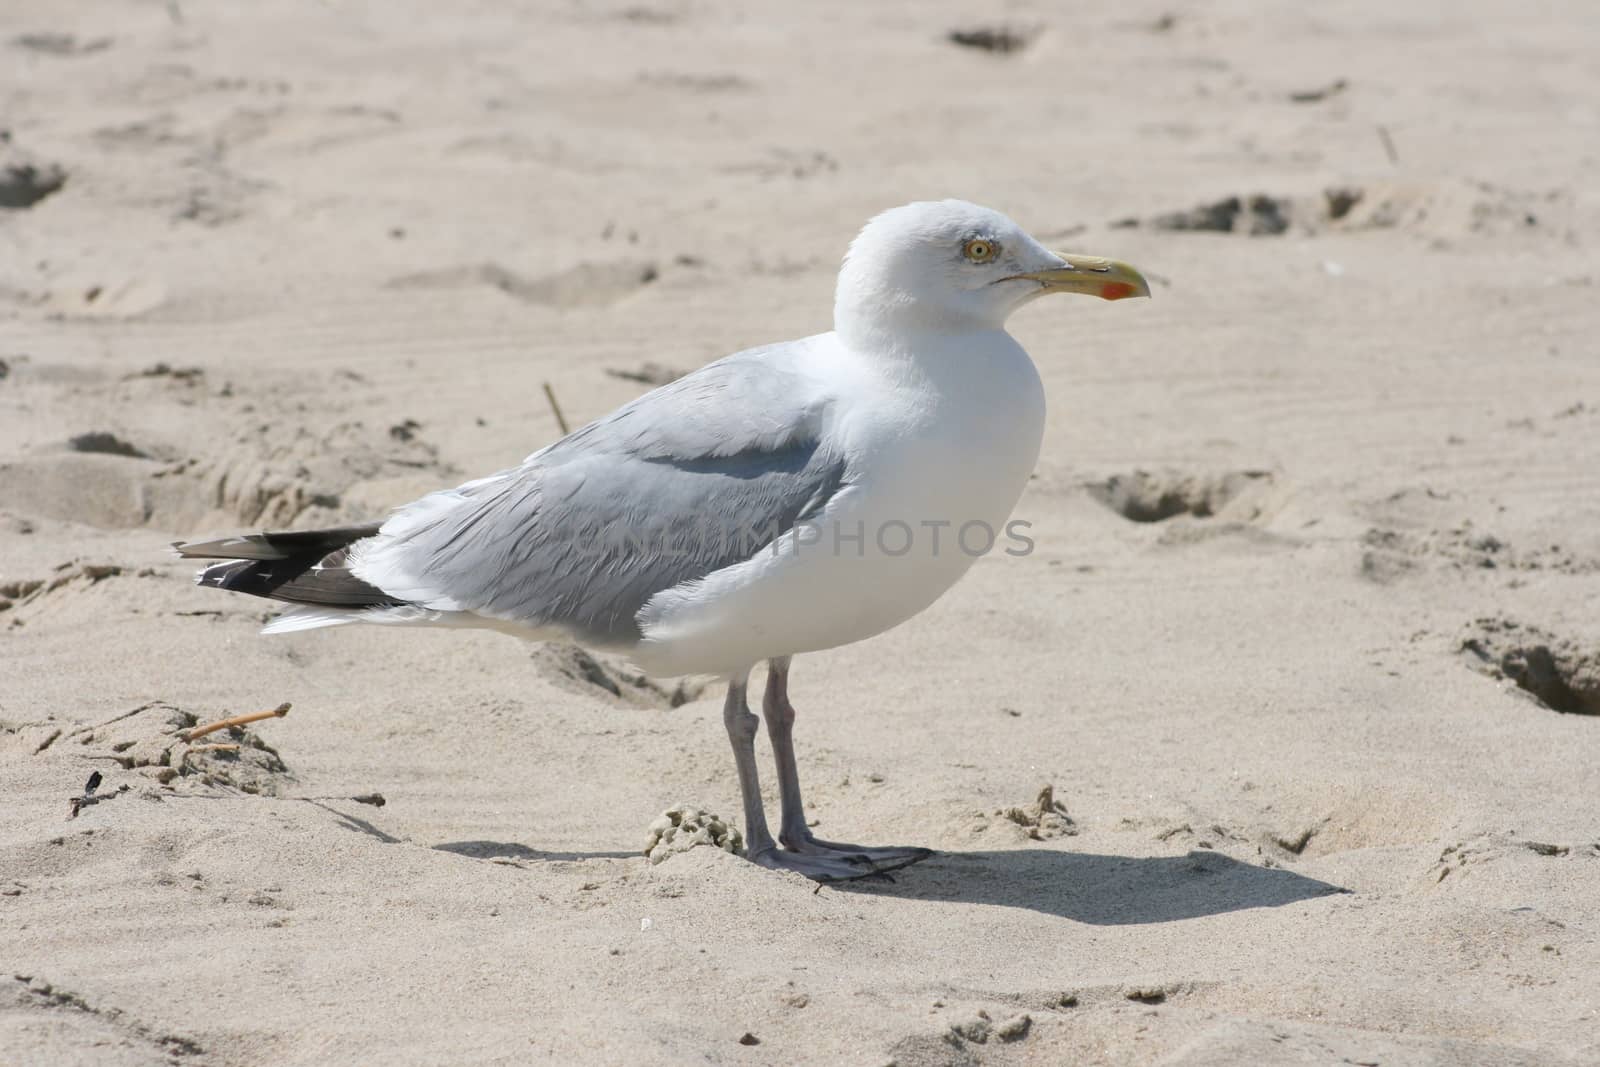 Close-up of a gull sitting on the sand,  Nahaufnahme einer im Sand sitzenden Silberm�we,